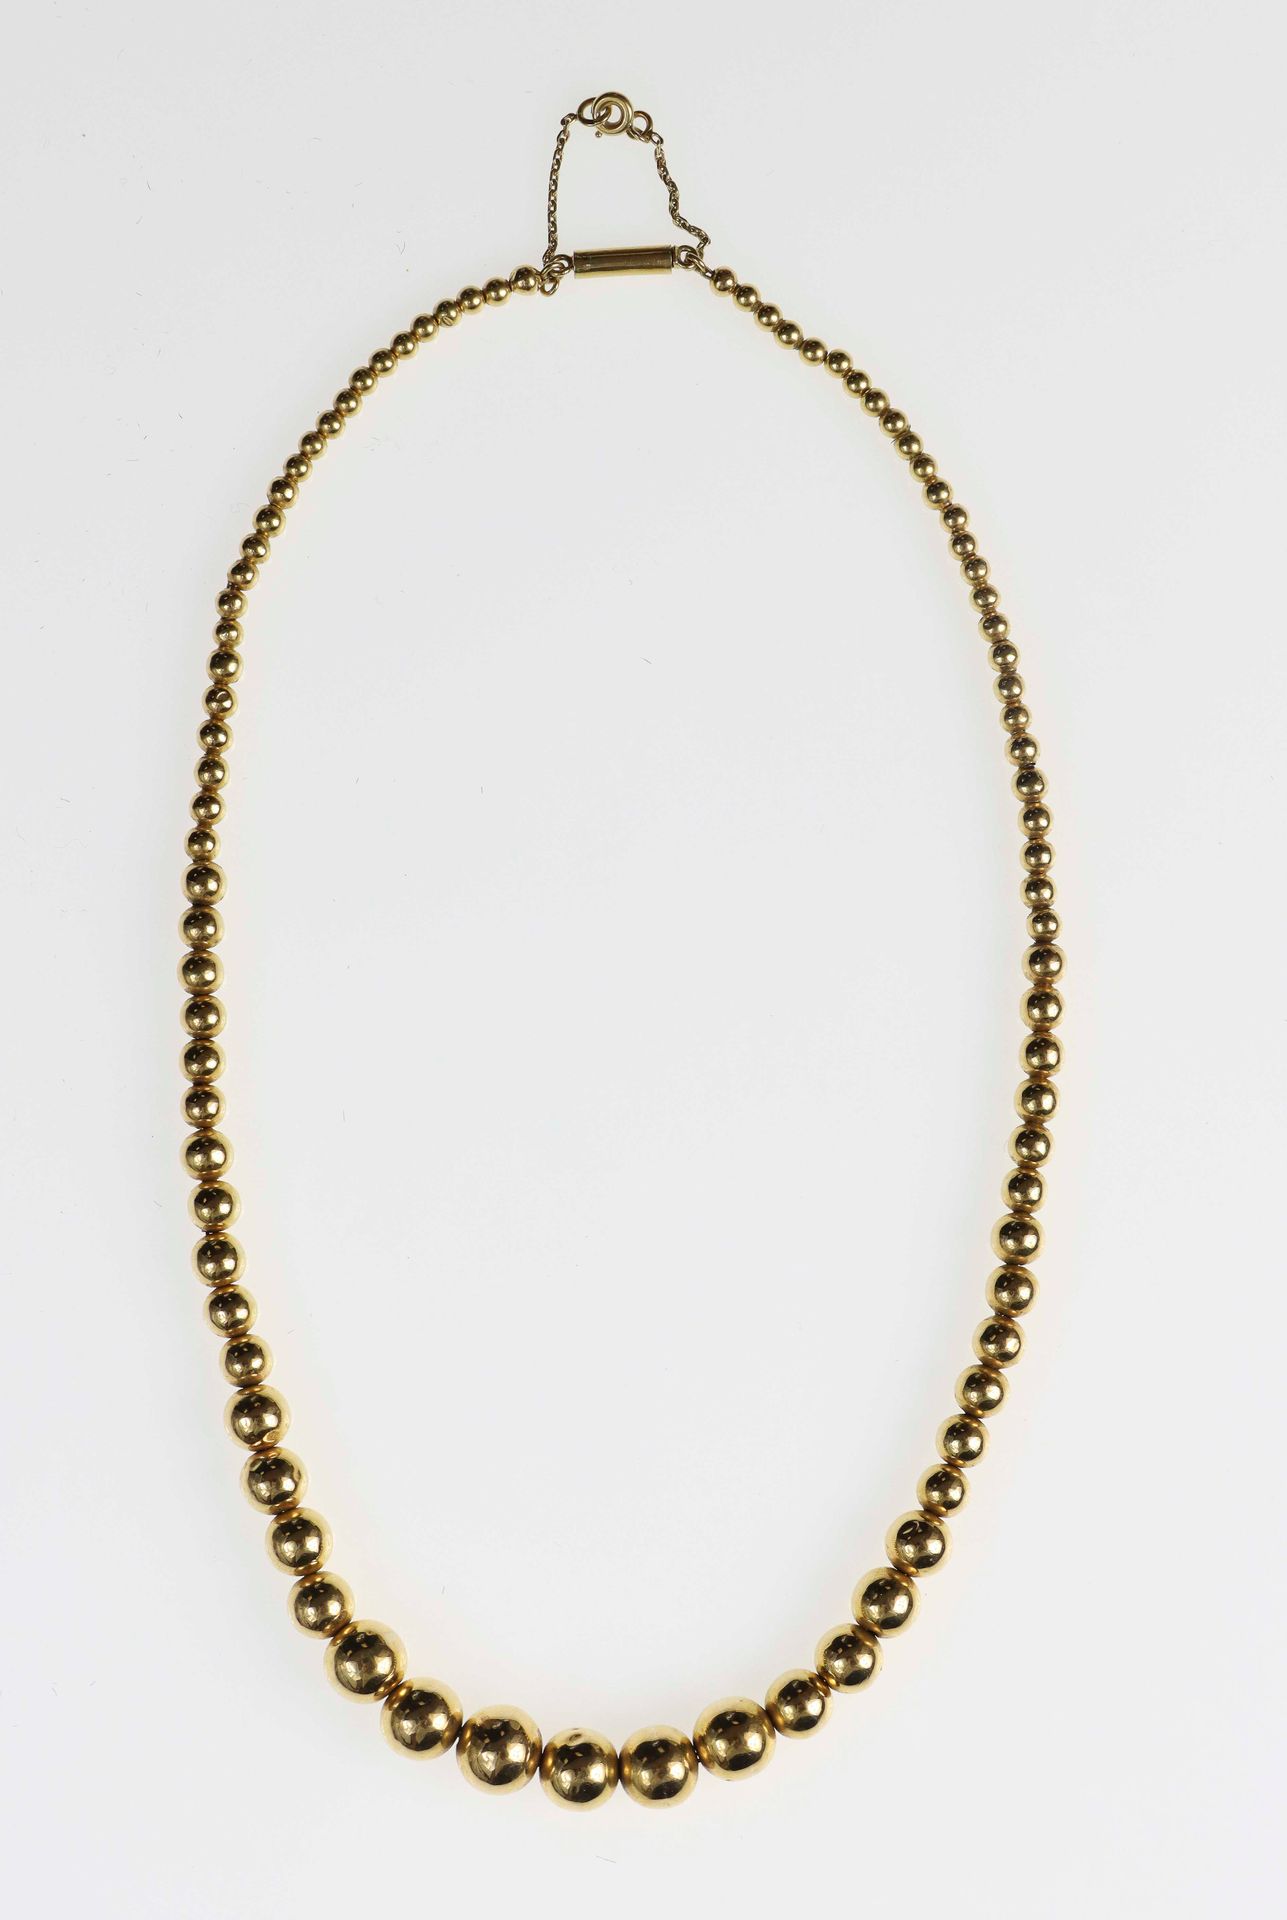 Null Goldene Halskette aus fallenden Perlen. Mit einer Sicherheitskette. 14,8 g